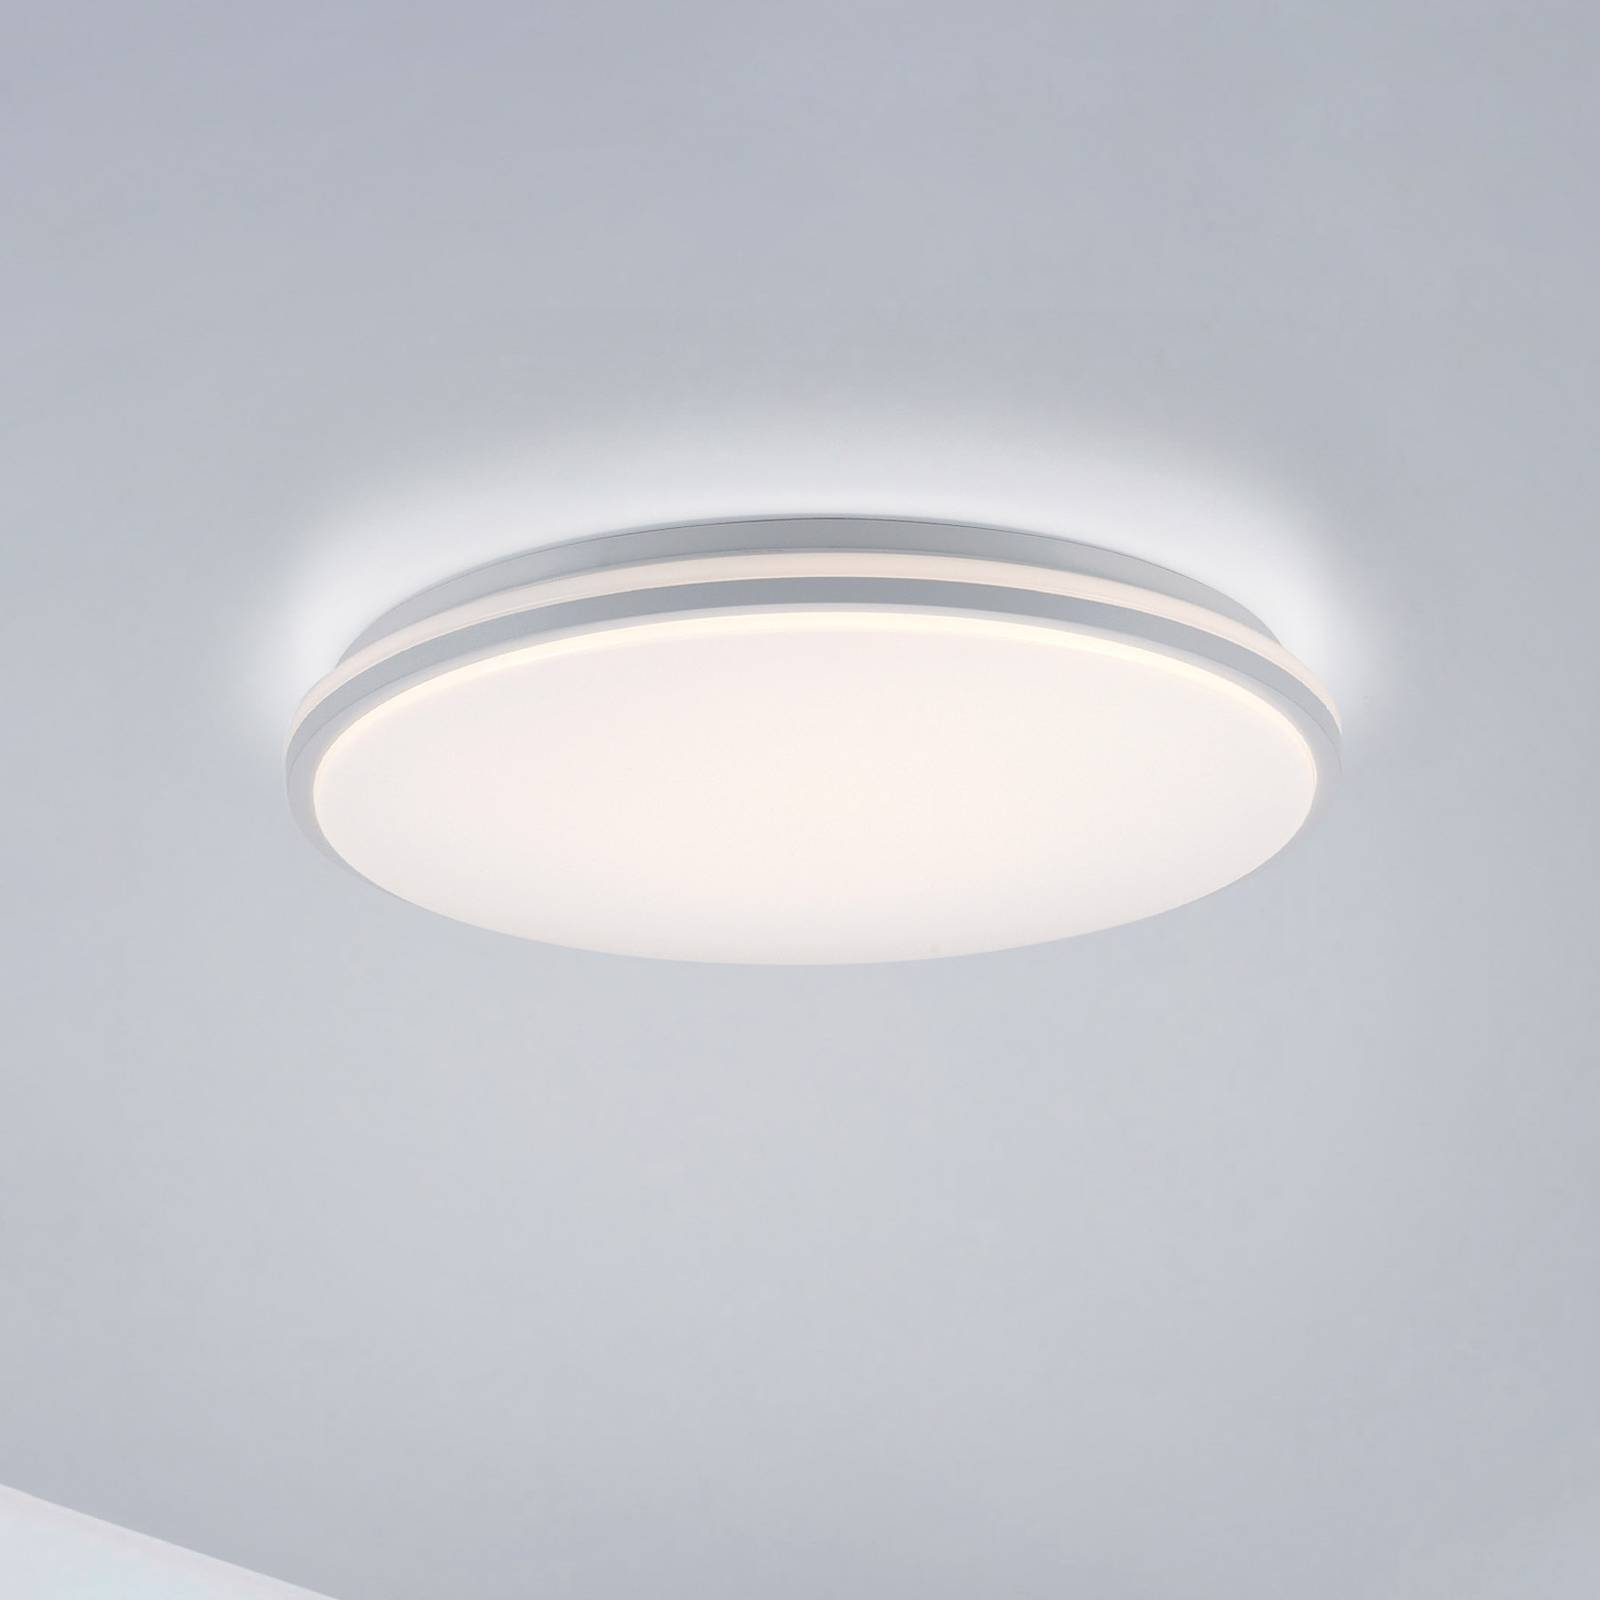 JUST LIGHT. Stropní svítidlo Colin LED, 3stupňový stmívač, Ø 49 cm